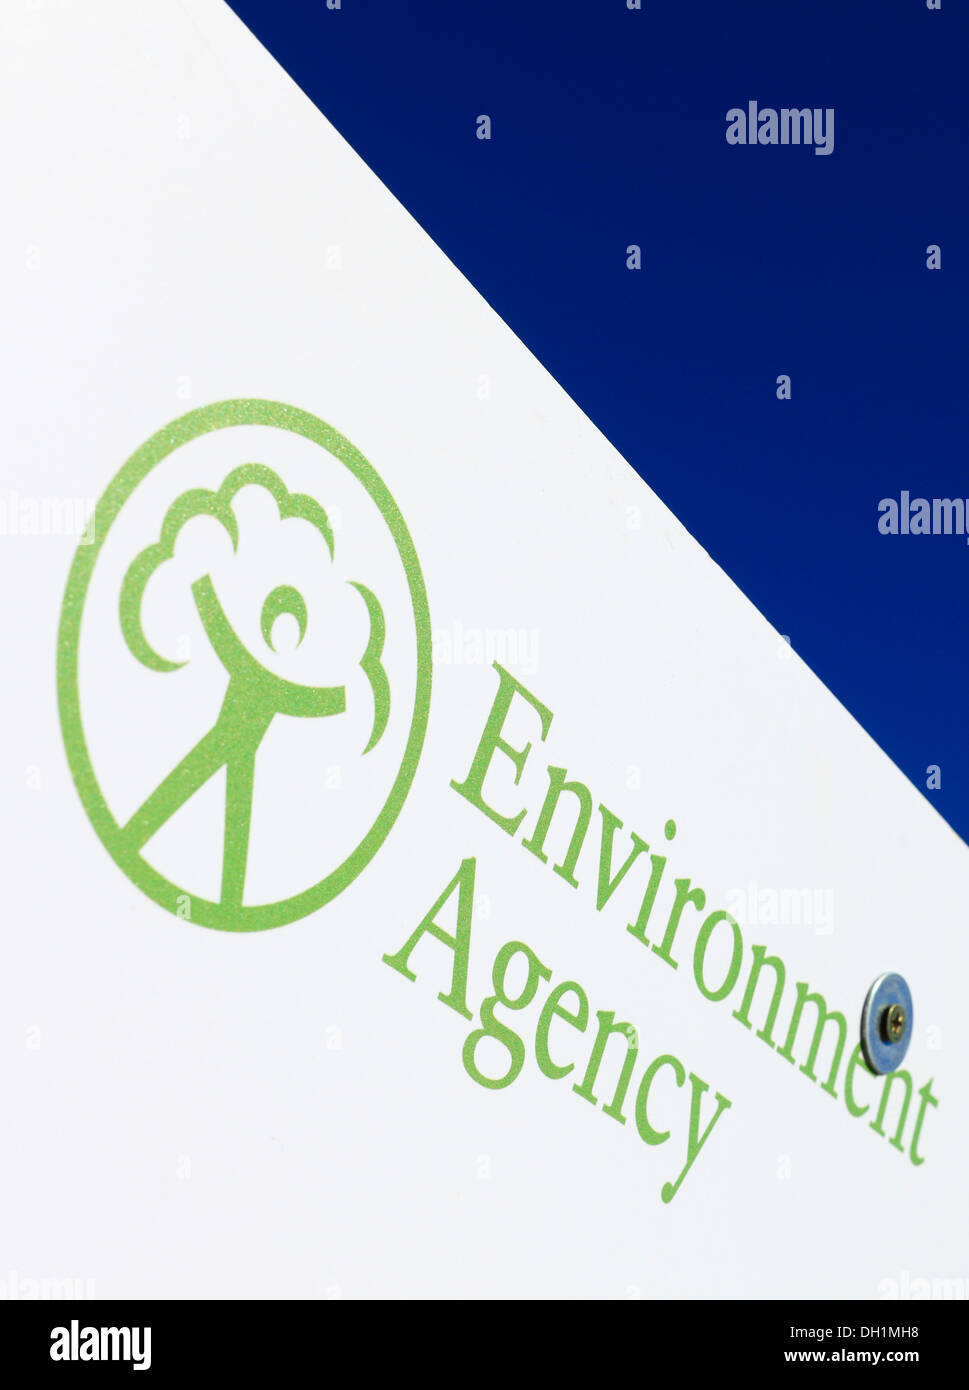 Logo de l'Agence de l'environnement sur une carte avec ciel bleu derrière. Banque D'Images